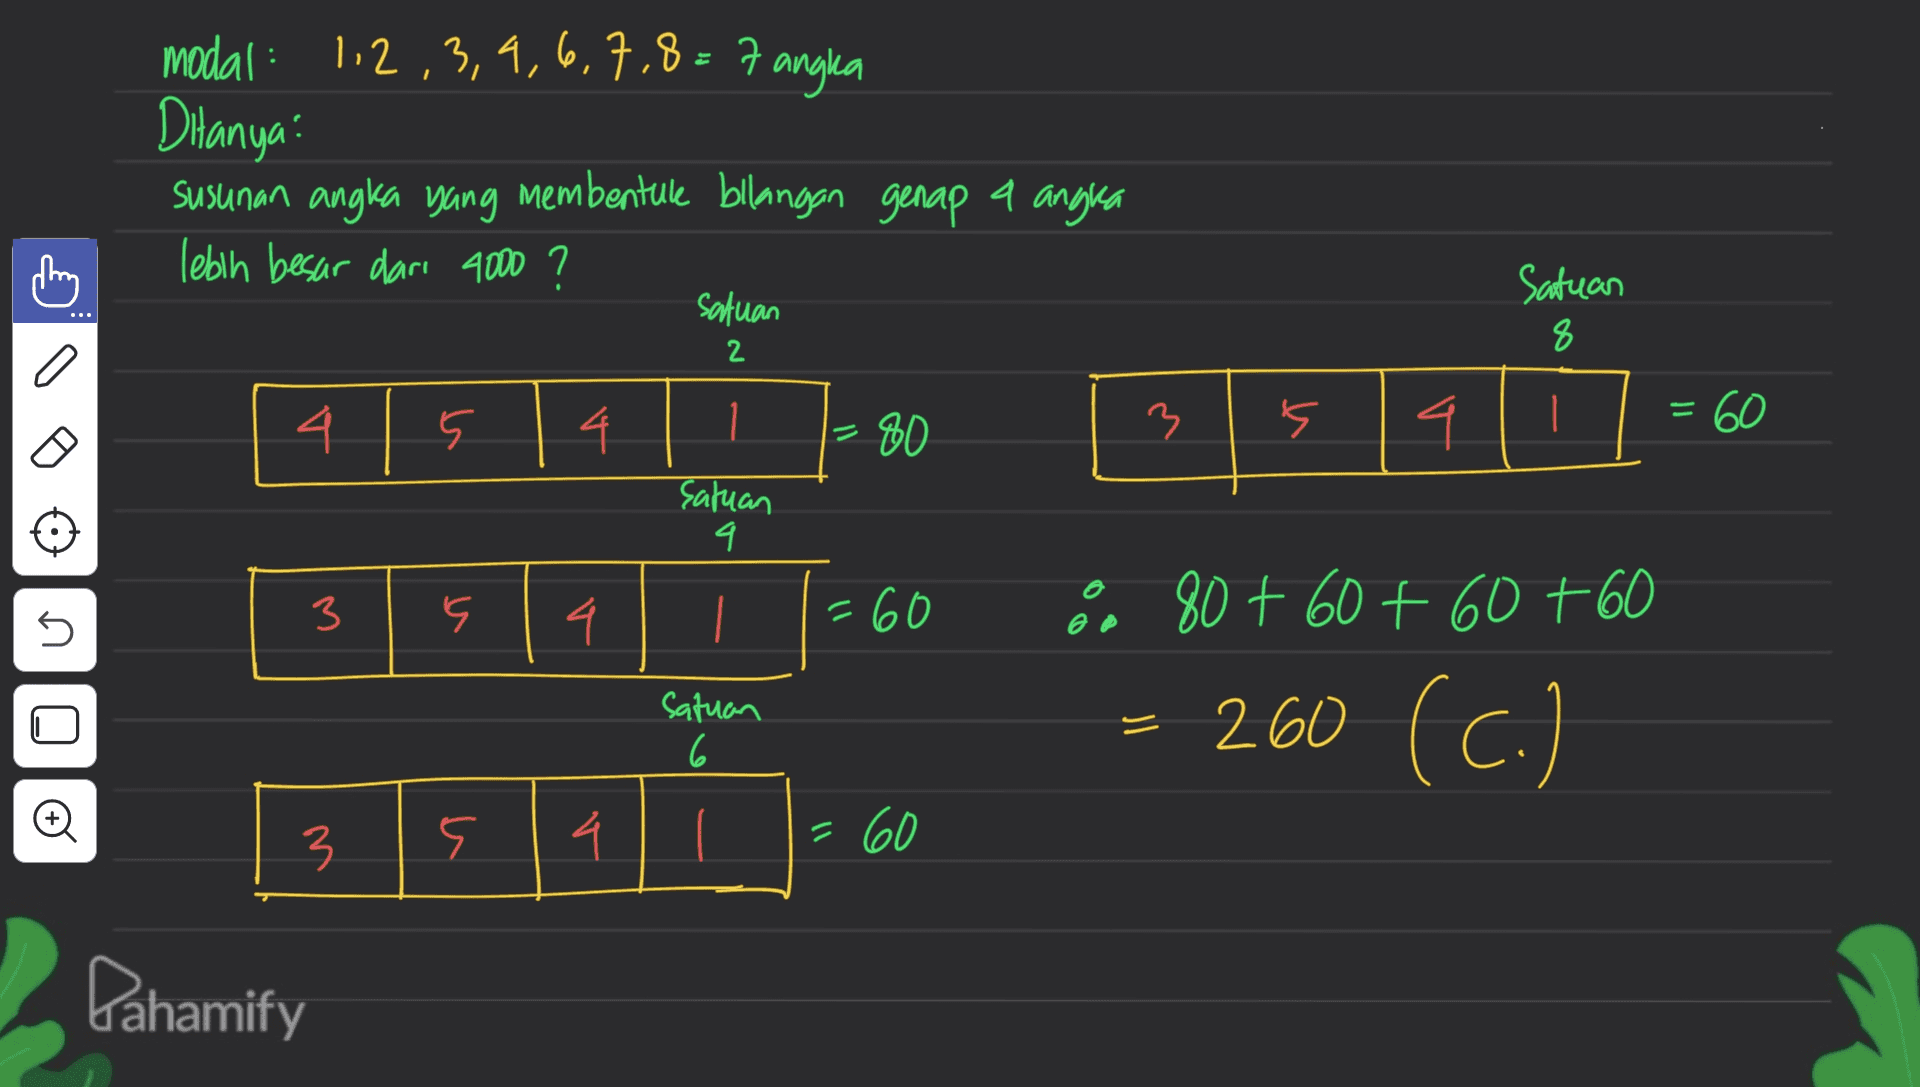 modal : 1,2,3,4,6,7,8=7 angka Ditanya: susunan angka yang membentule bilangan genap a angla lebih besar dari 4000 ? satuan thing Satuan 8 2 a 4. 5 - 4 3 - 80 s 1 4 satuan 9 3 5 5 4 = 60 80 + 60 +60 +60 satuan 6 = 260 (c.) o 3 3 9 4 = 60 Dahamify 